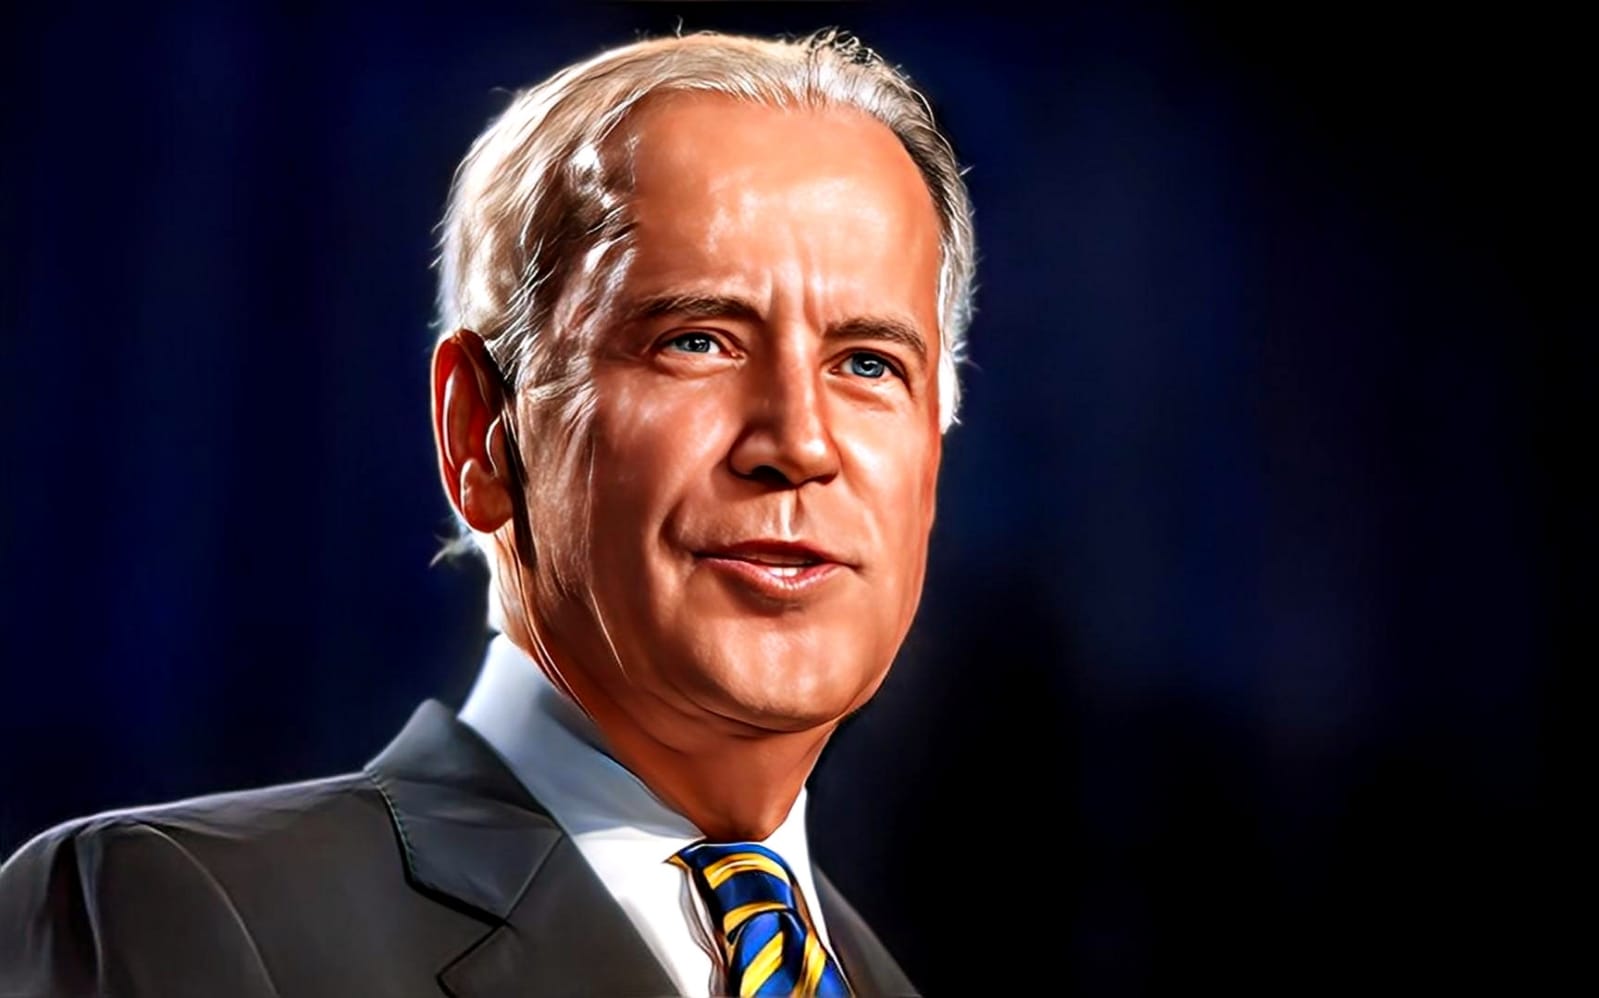 American President Joe Biden